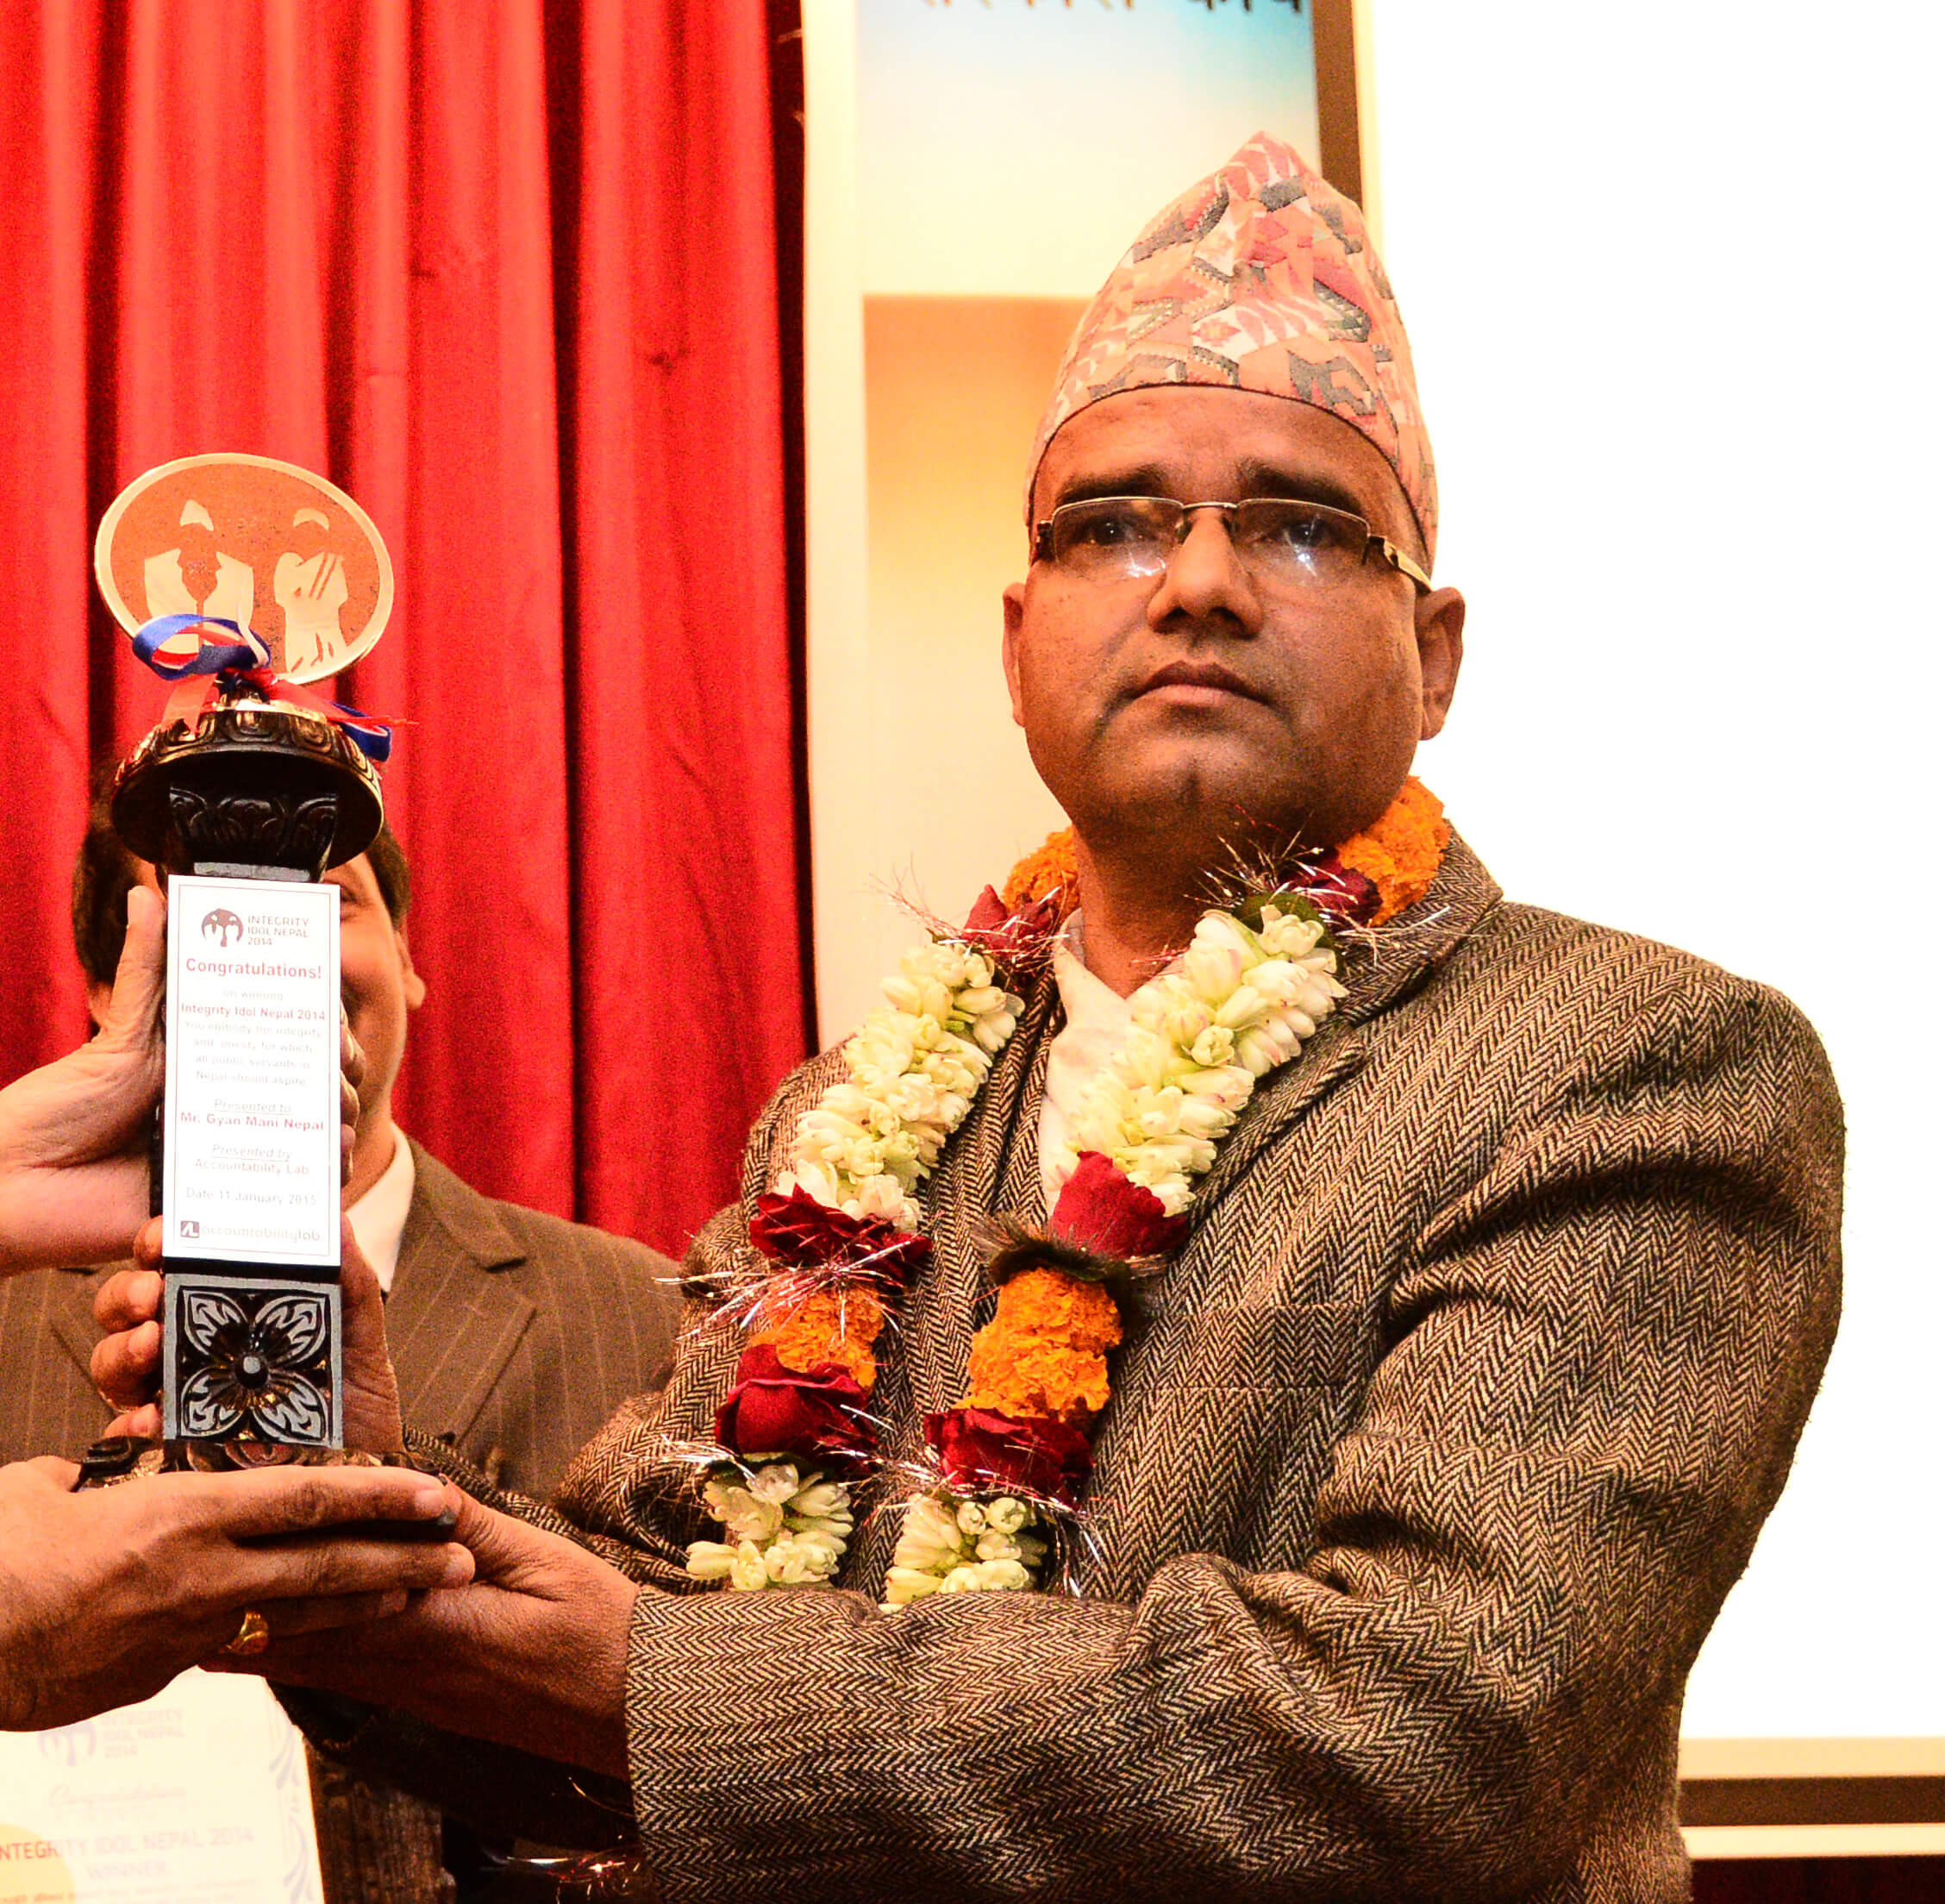 Gyan Mani Nepal Integrity Idol